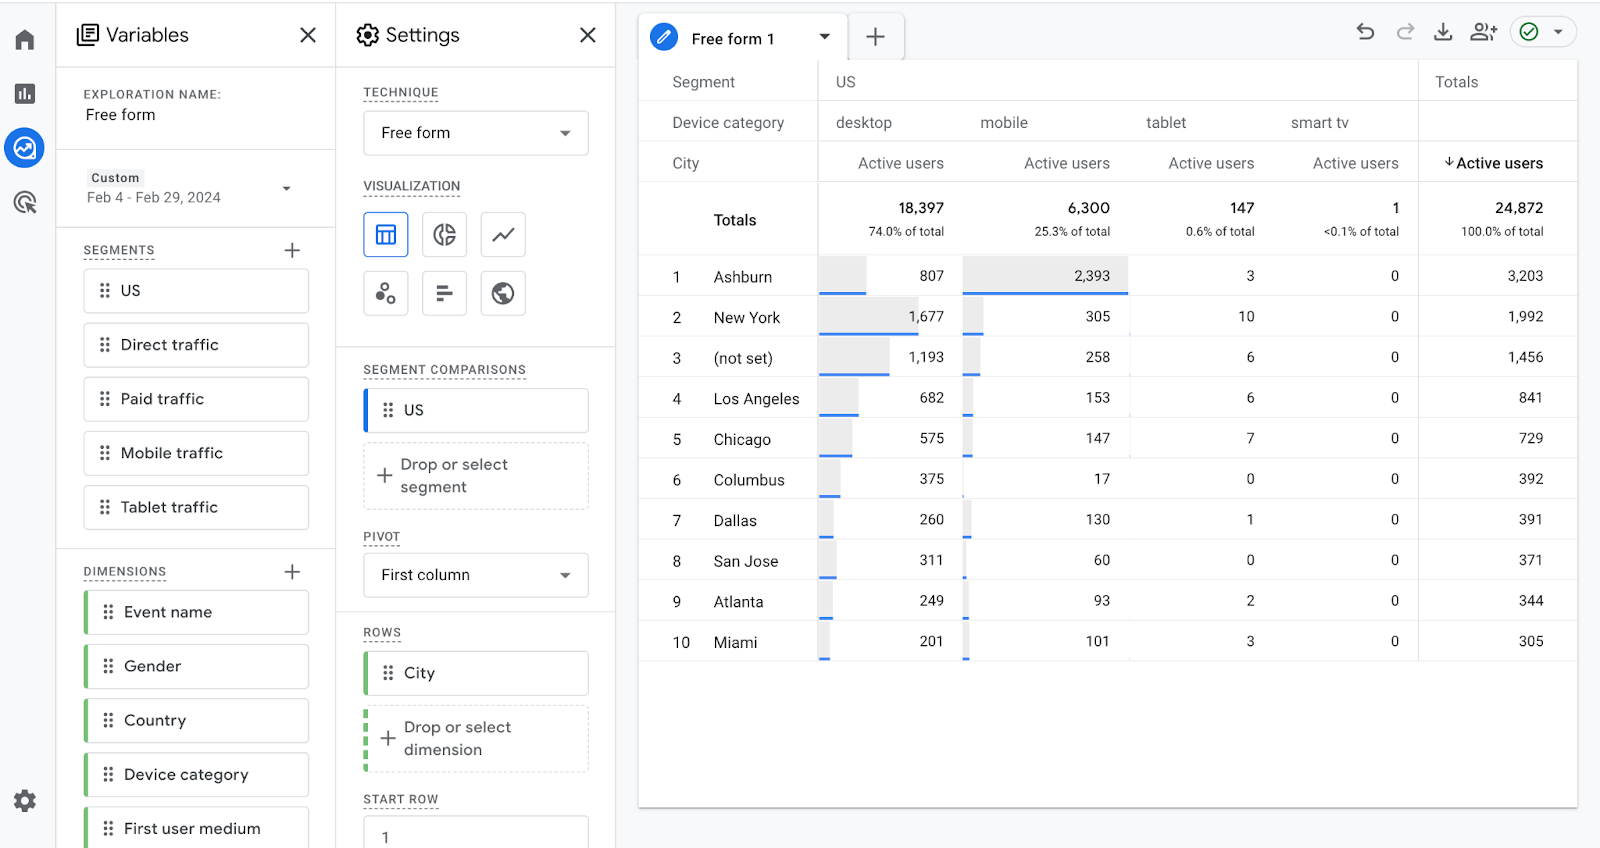 Google Analytics 4 расширяет возможности специальных отчетов за счет более глубокого анализа поведения пользователей и межплатформенной эффективности.